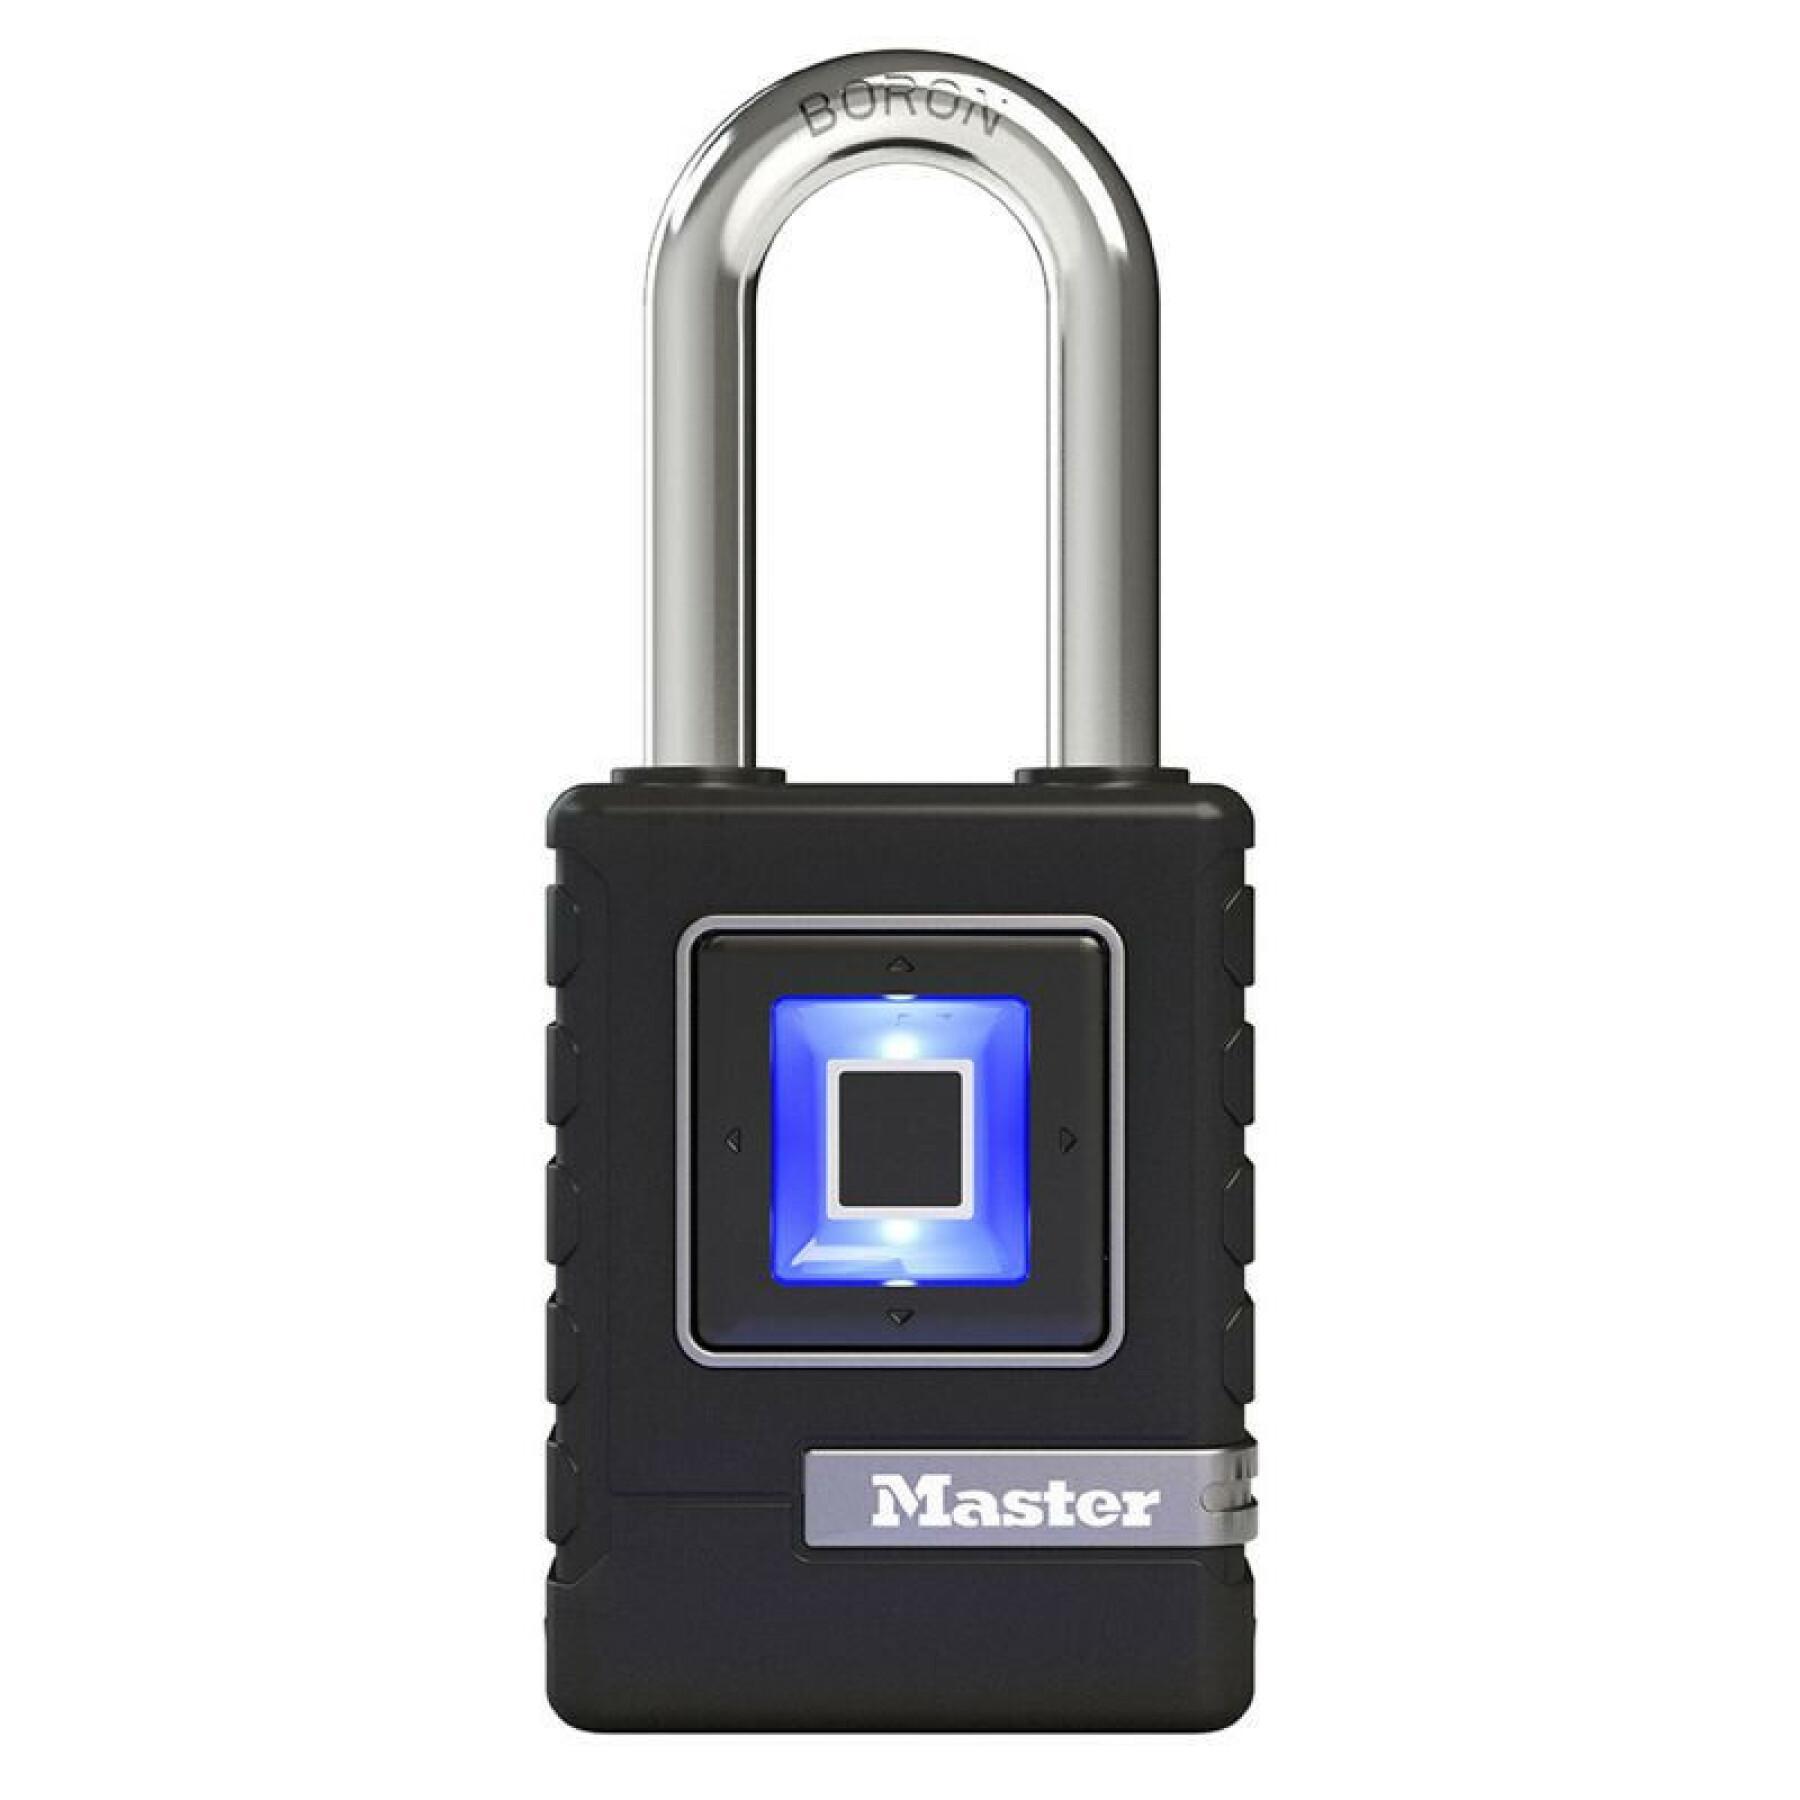 Biometrisches Vorhängeschloss zur Diebstahlsicherung kann 10 Fingerabdrücke speichern Sicherheitsstufe 8 Masterlock